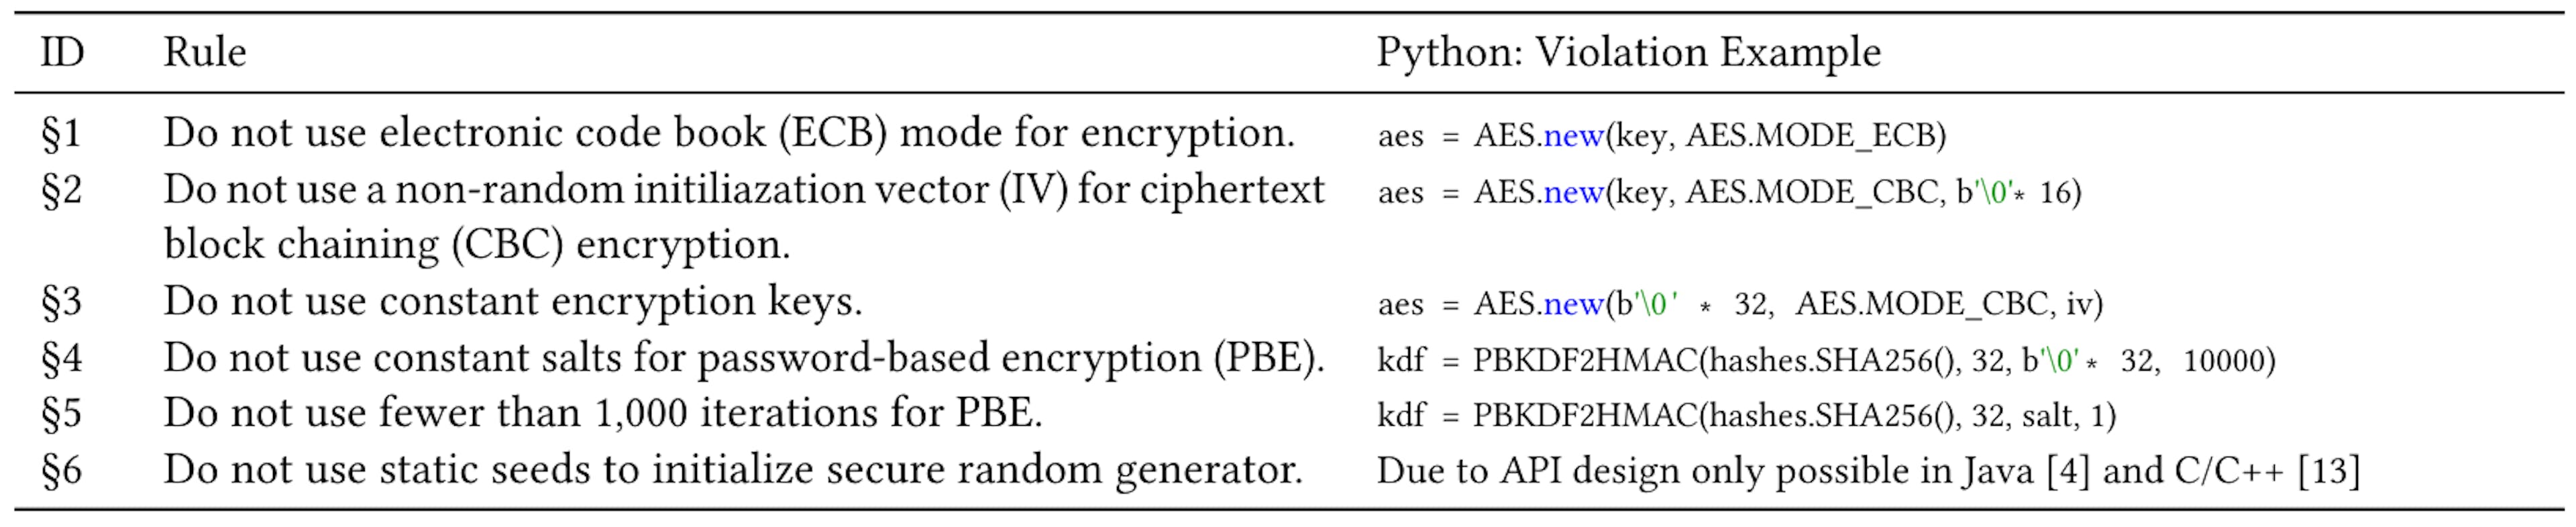 Tabla 1: Seis usos indebidos de criptografía comúnmente discutidos en Java y C [4, 13] con un ejemplo de una violación en Python.